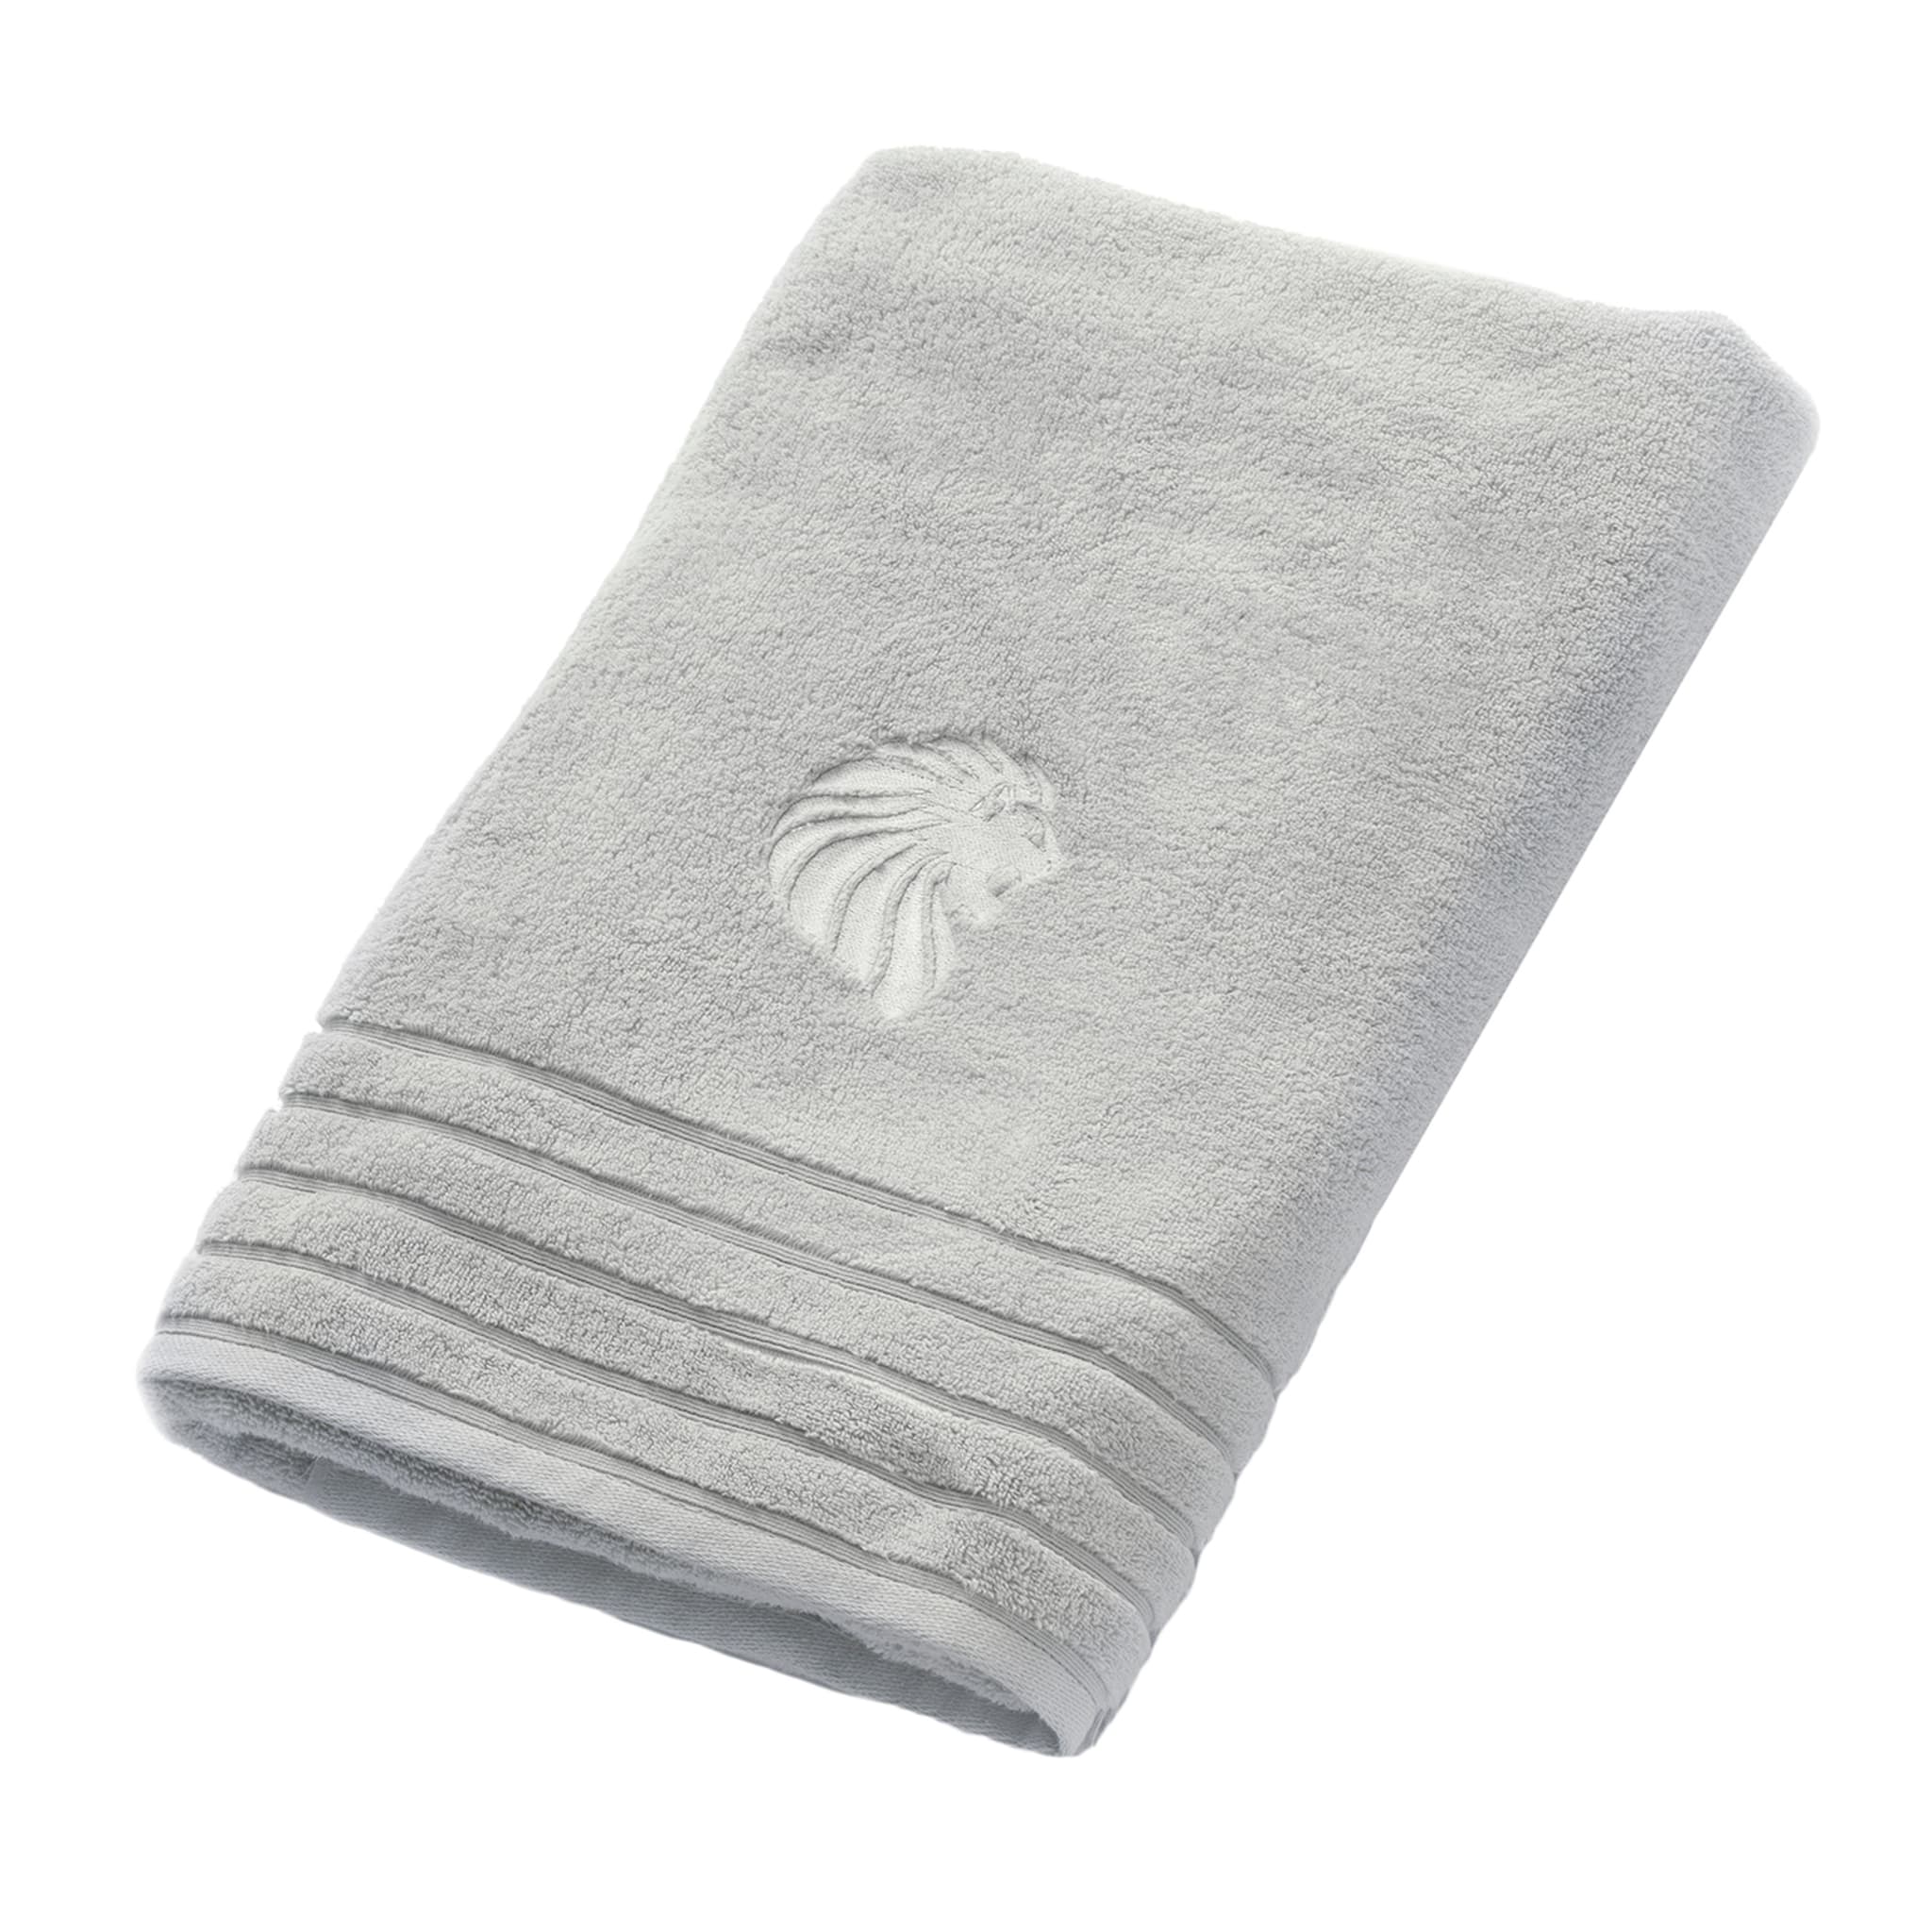 Asciugamano grigio della collezione Giorgio  - Vista principale